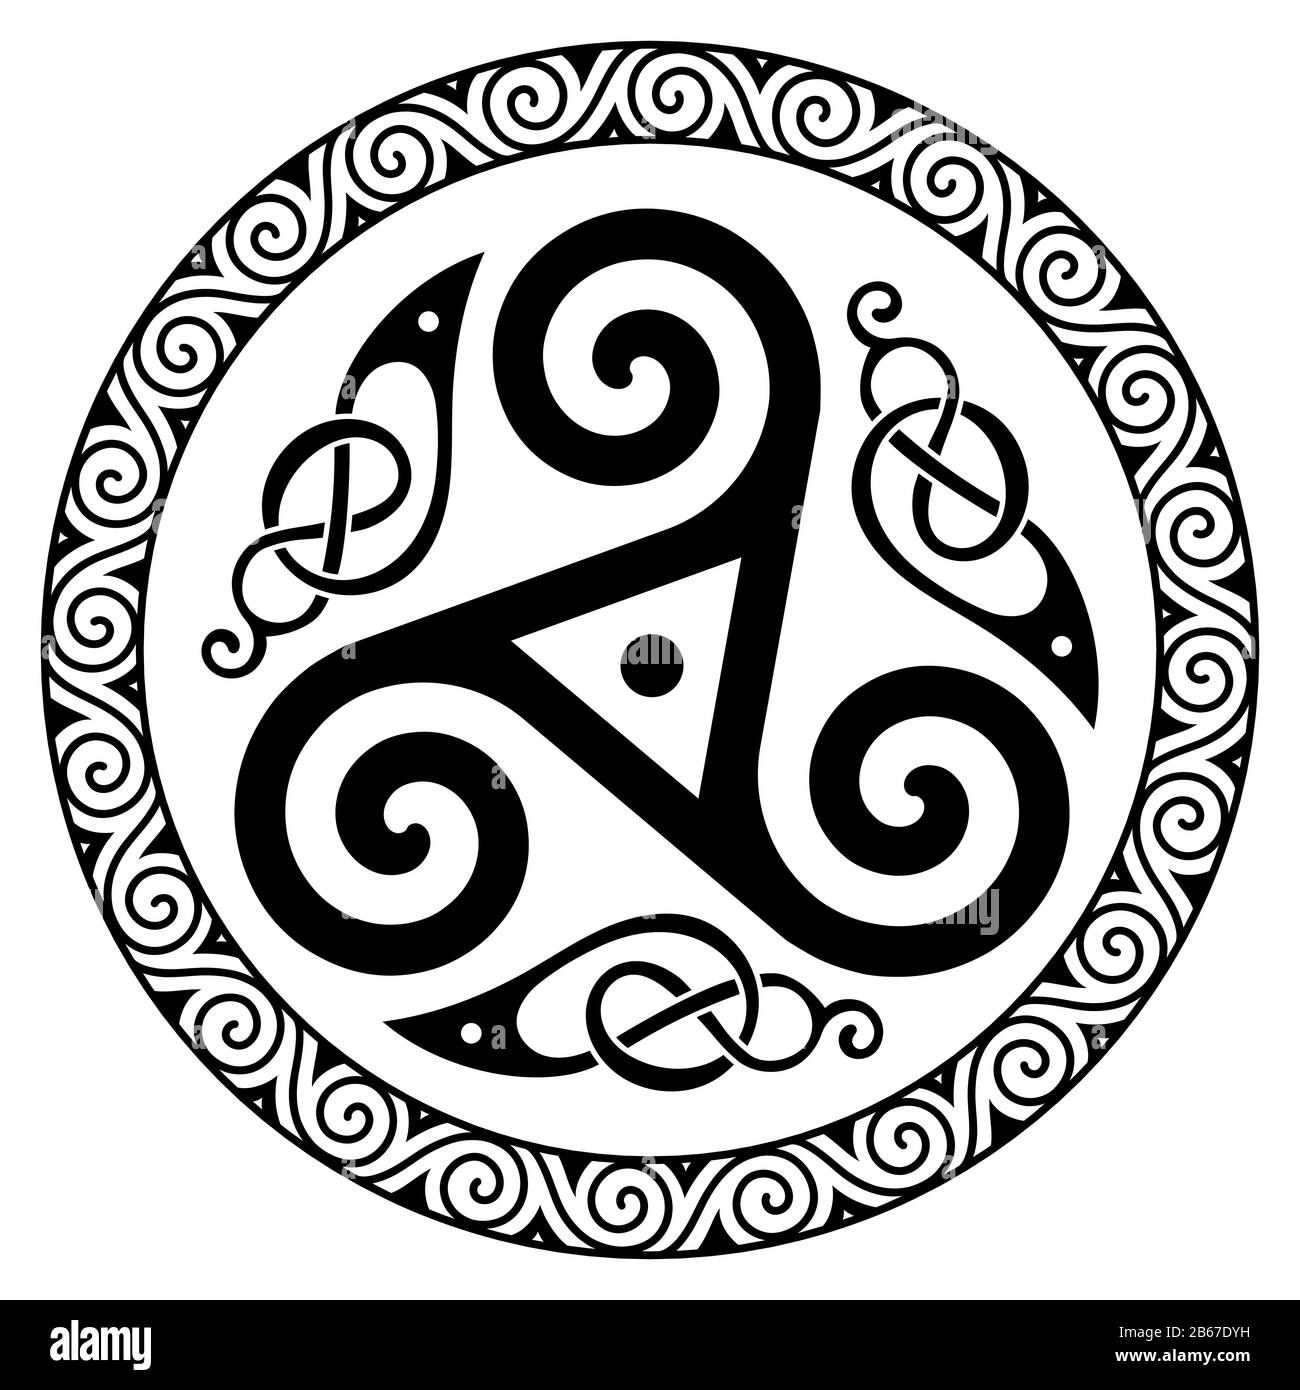 Antico Celtico Rotondo, Design Scandinavo. Nodo celtico, mandala Illustrazione Vettoriale